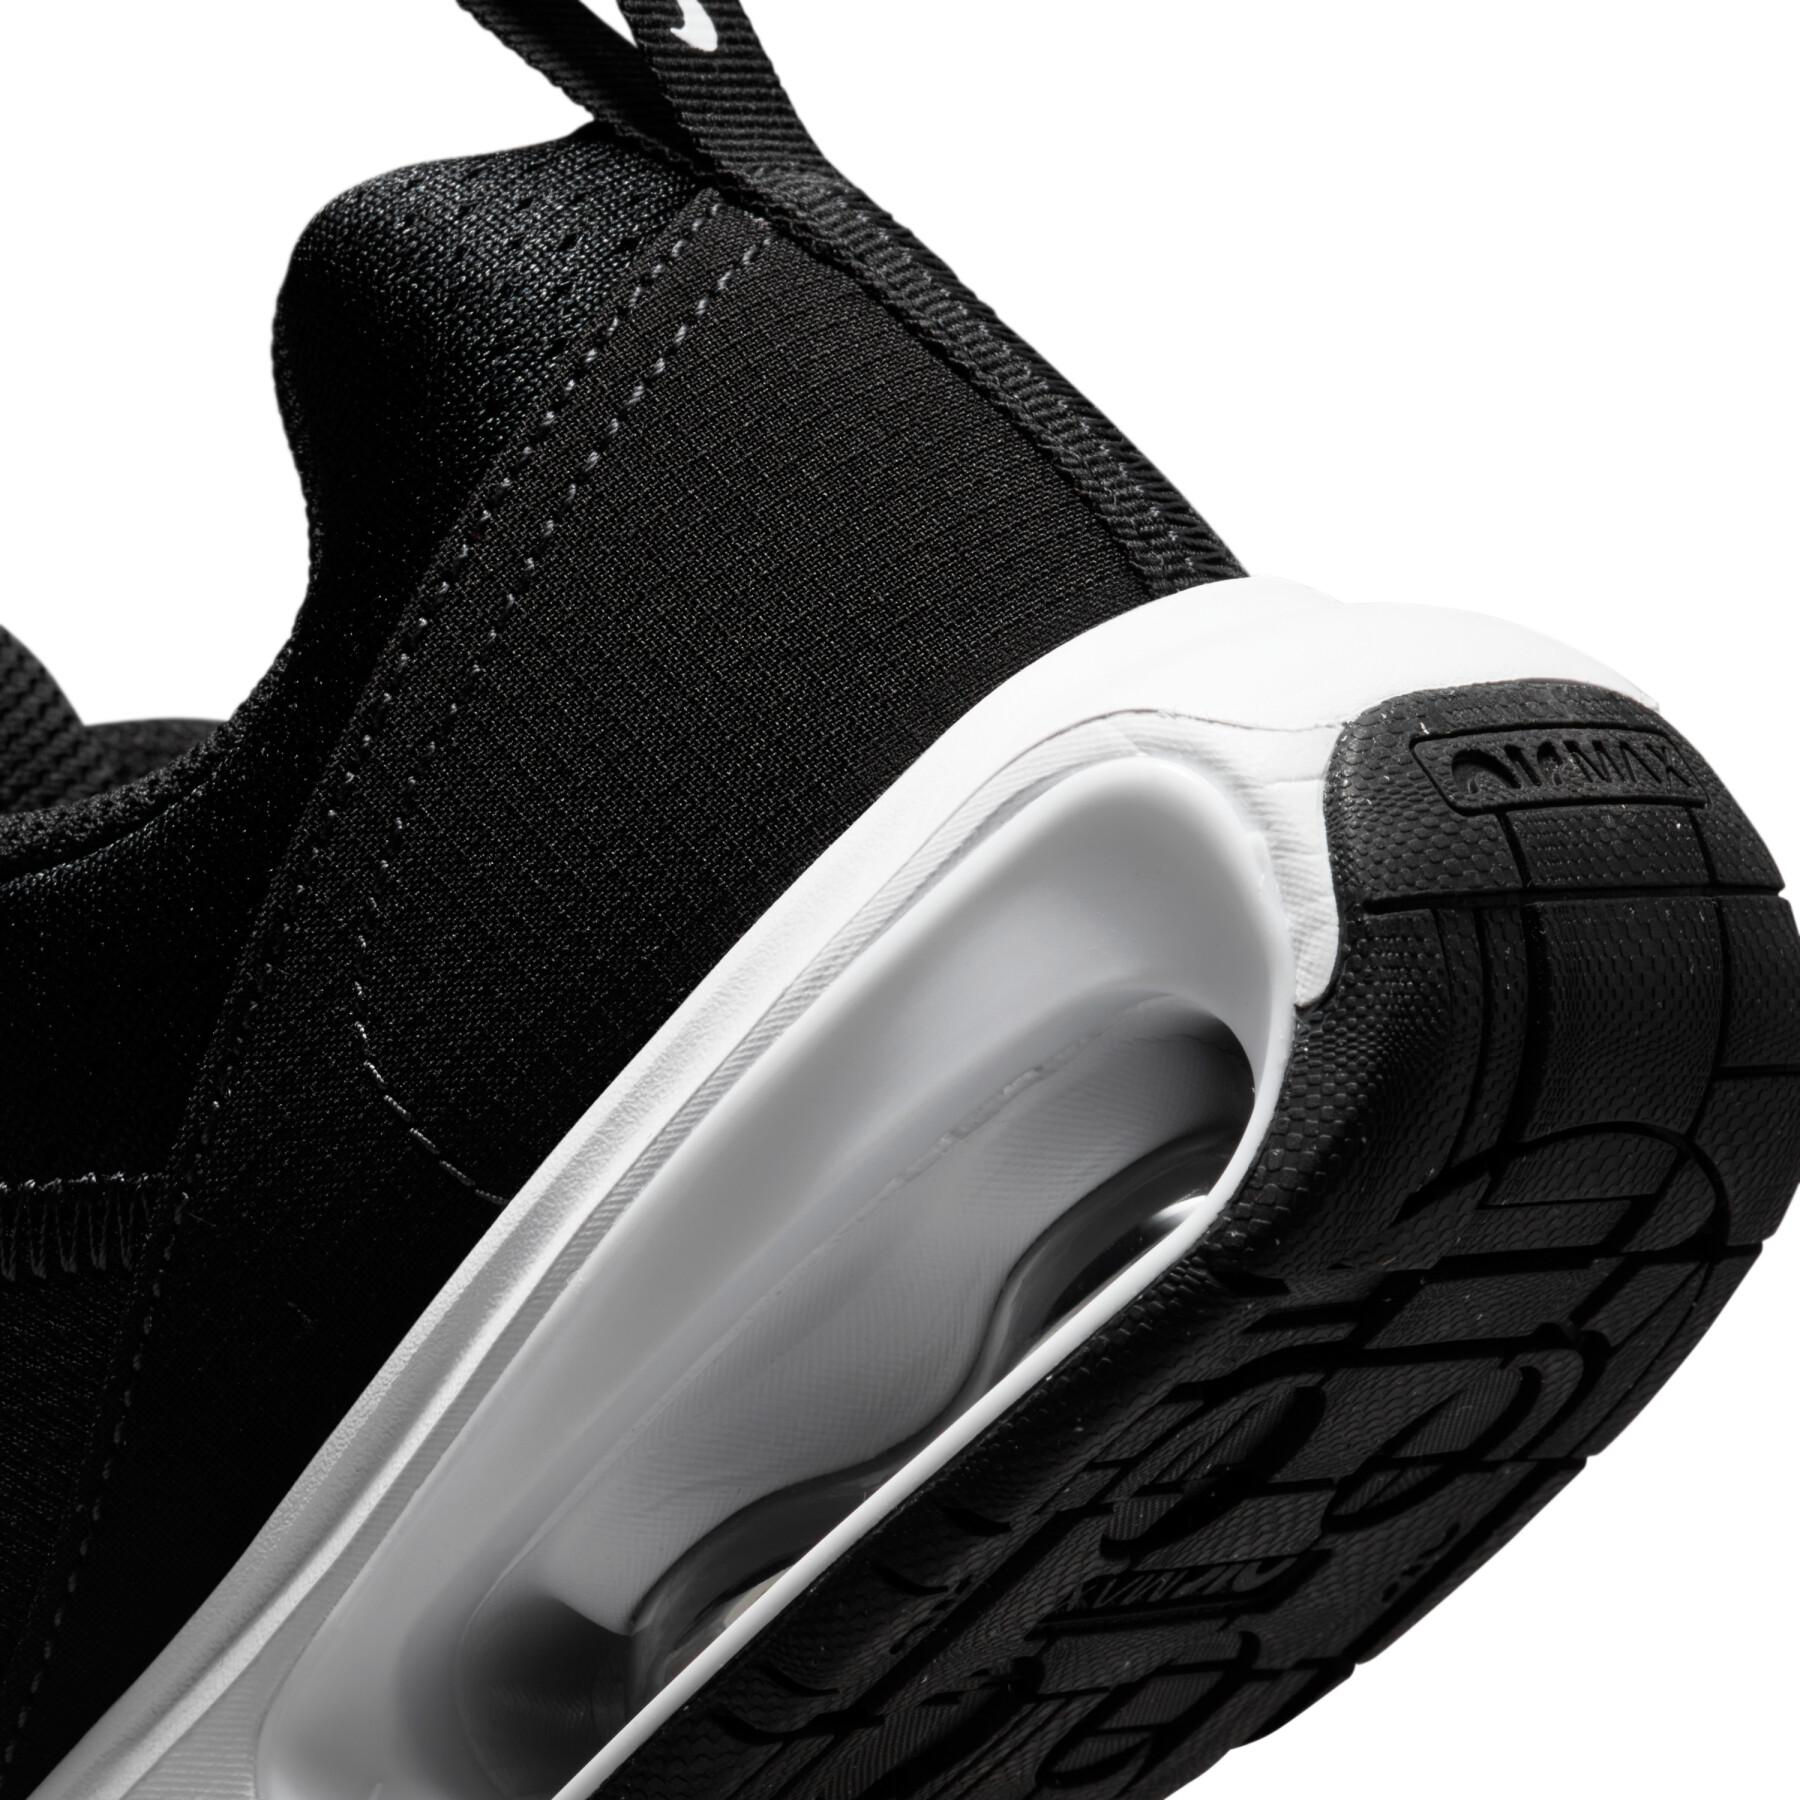 Children's sneakers Nike Air Max Intrlk Lite